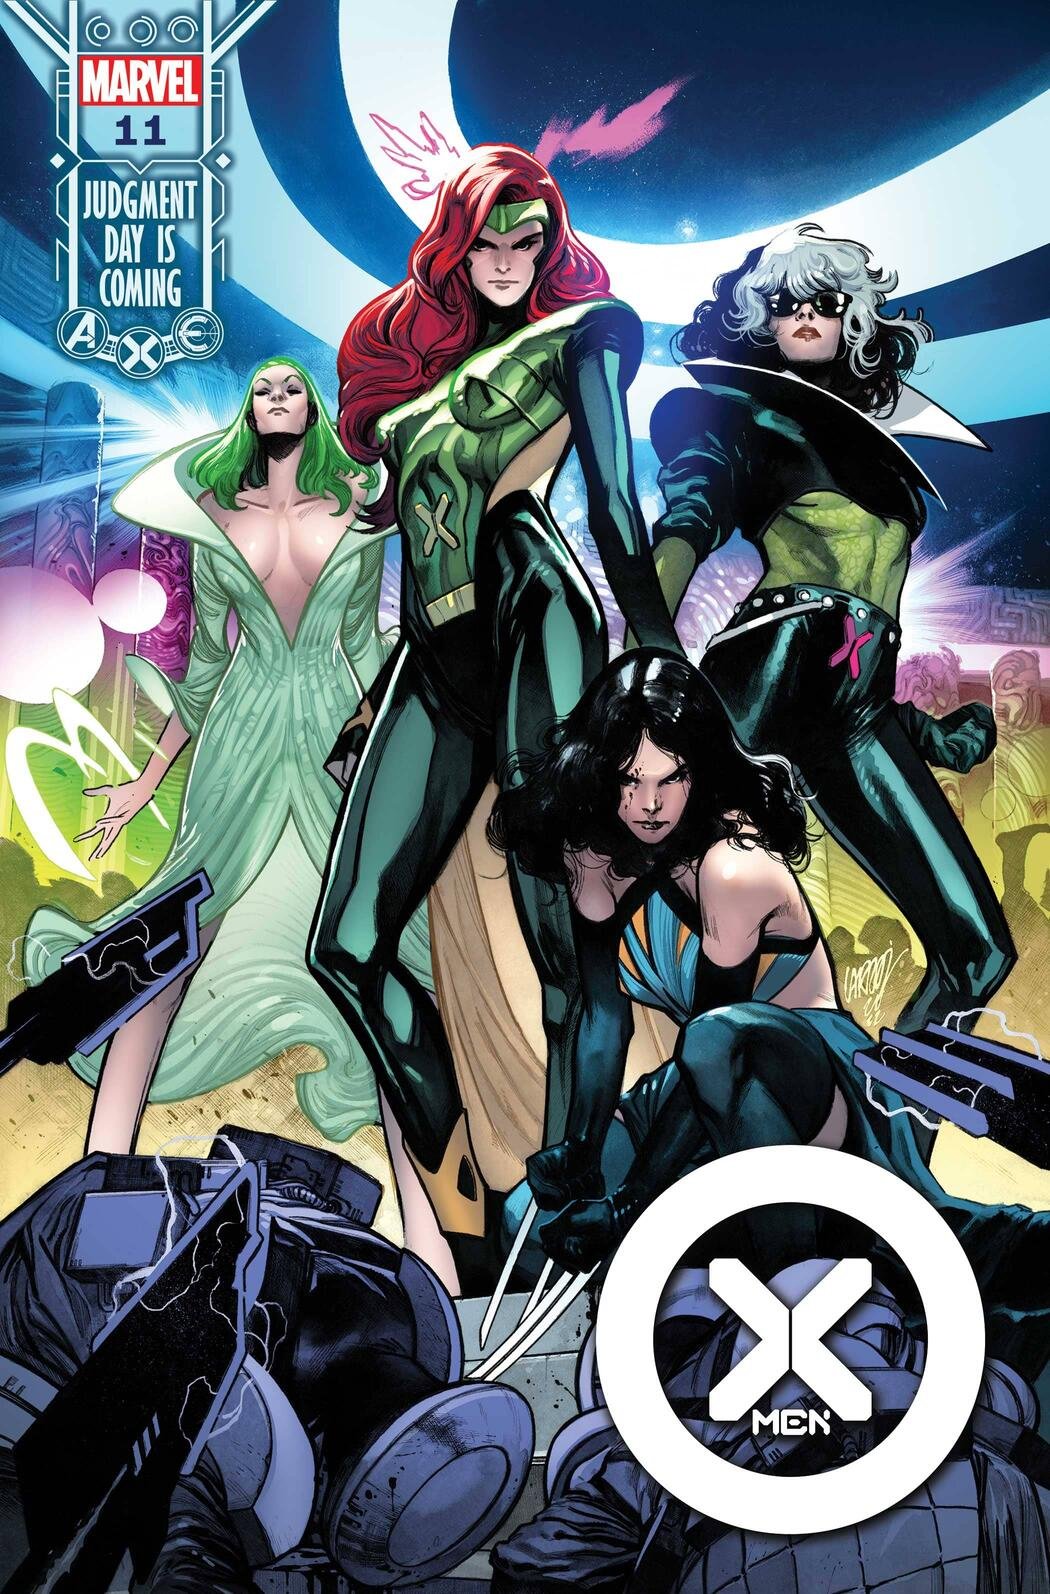 Cover di X-Men 11 di Pepe Larraz, altro tassello verso Judgment Day